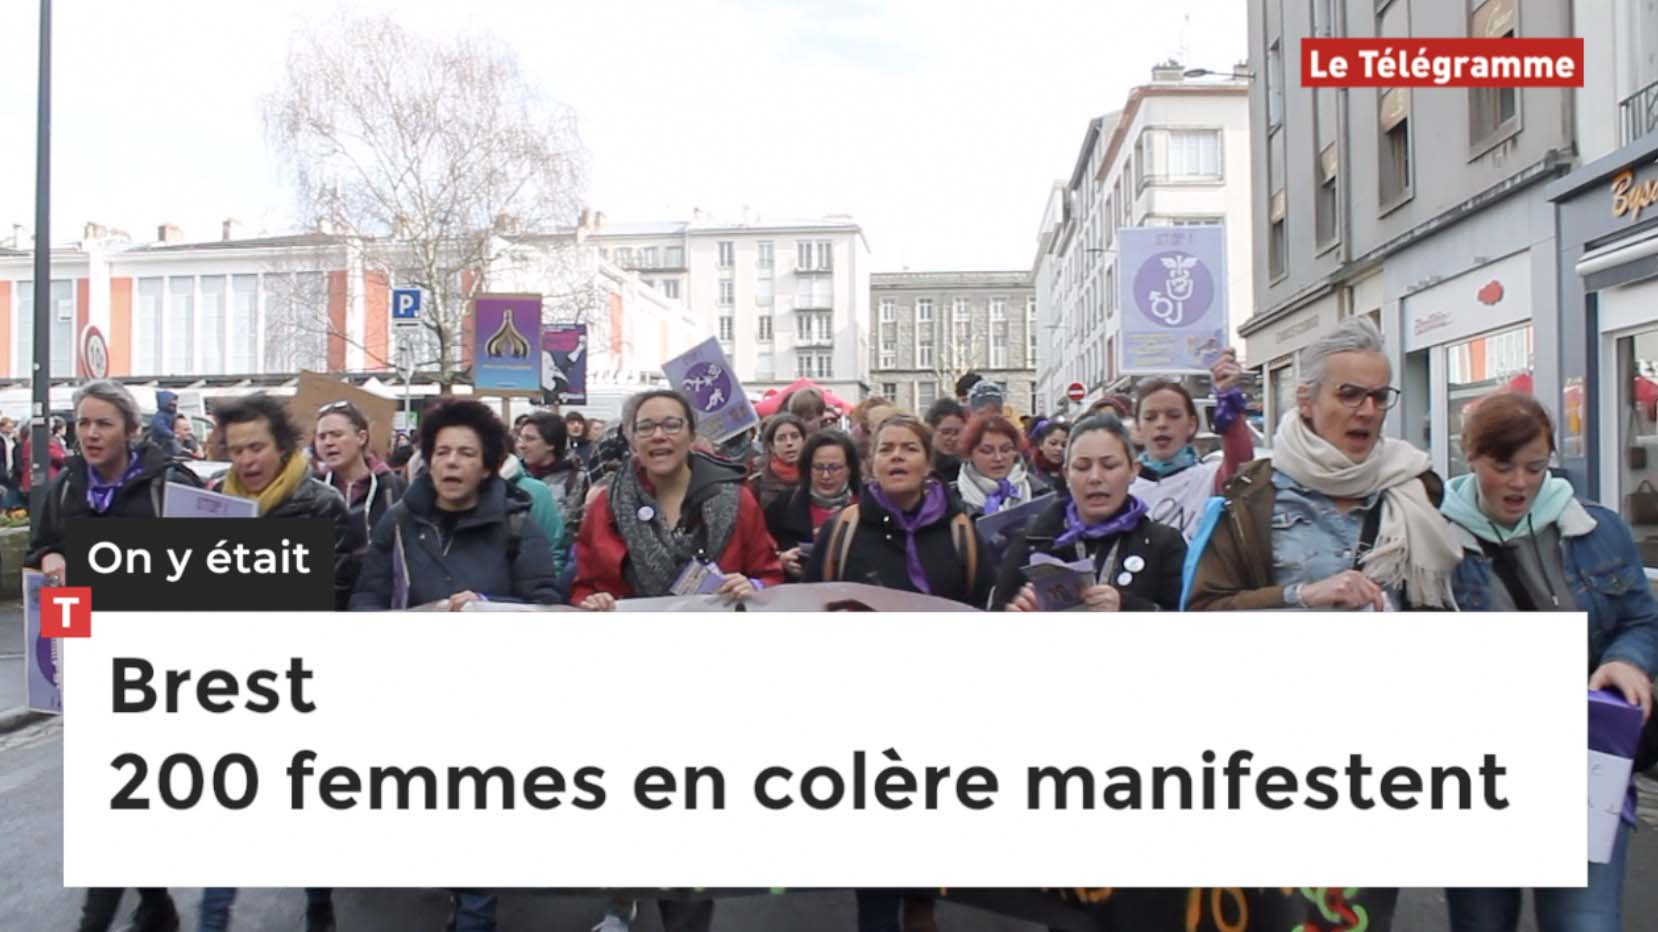 Brest. 200 femmes en colère manifestent (Le Télégramme)